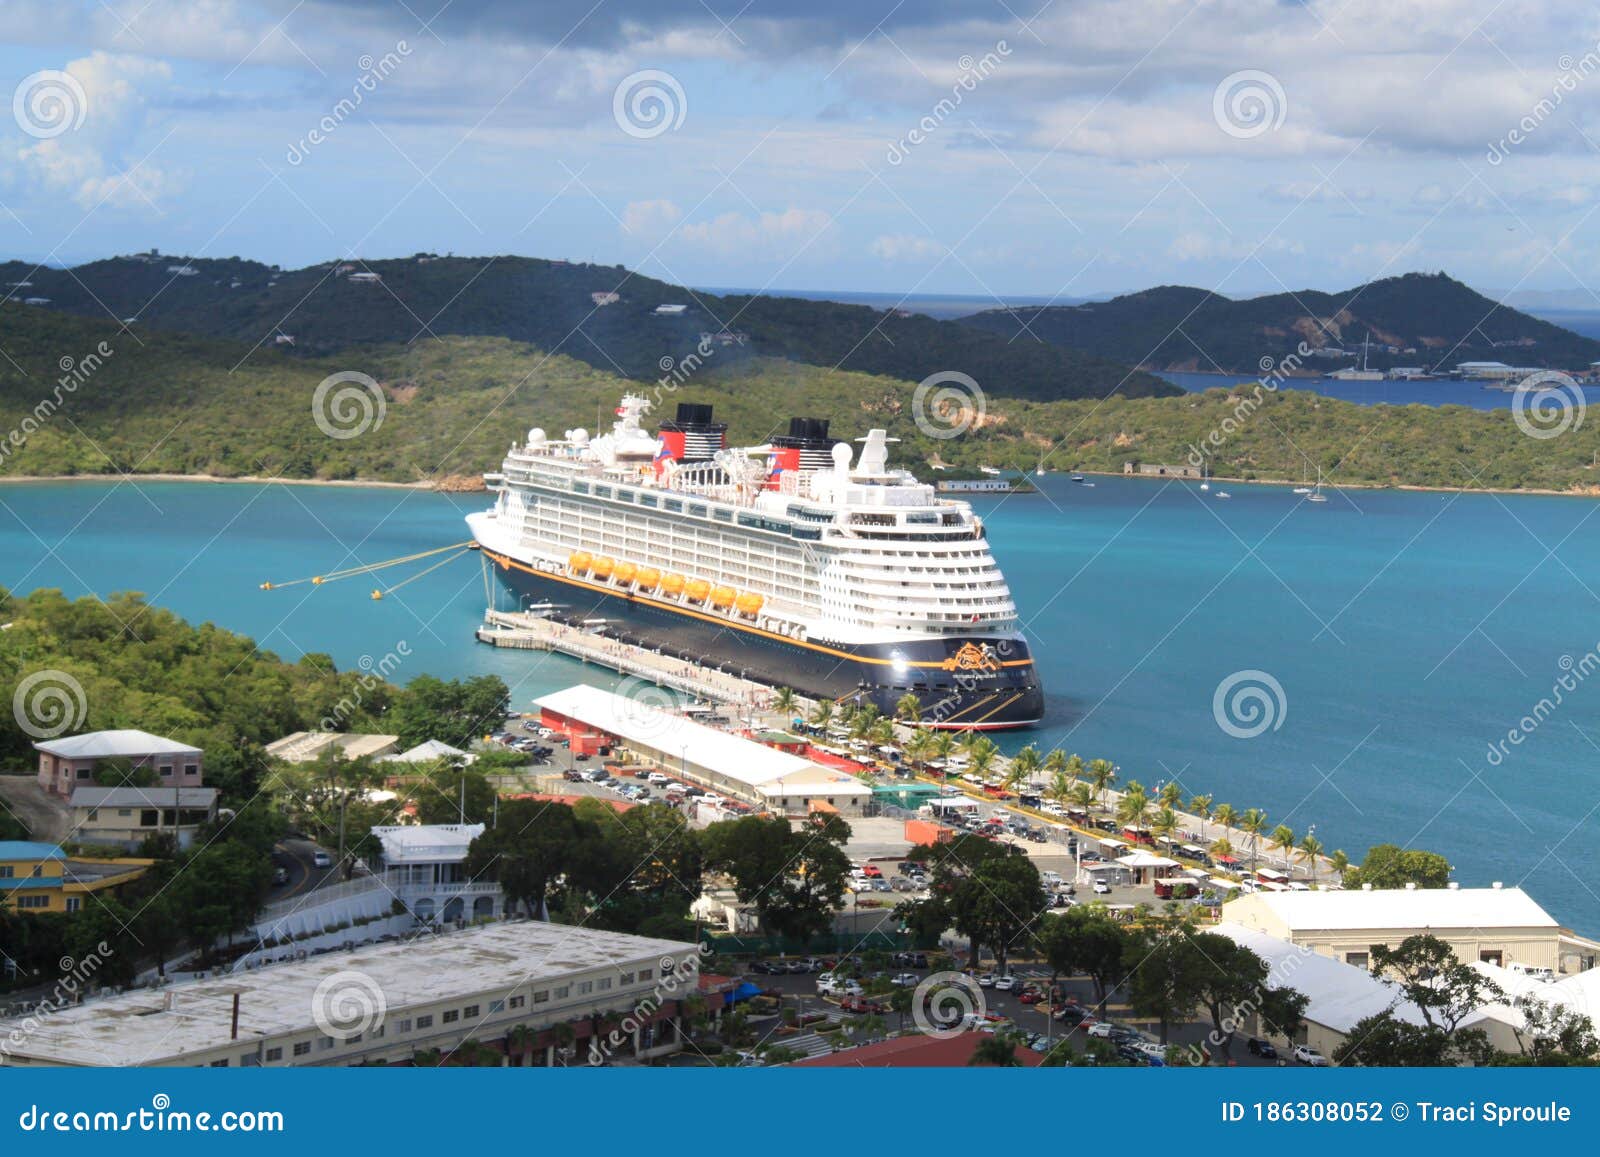 virgin islands disney cruise